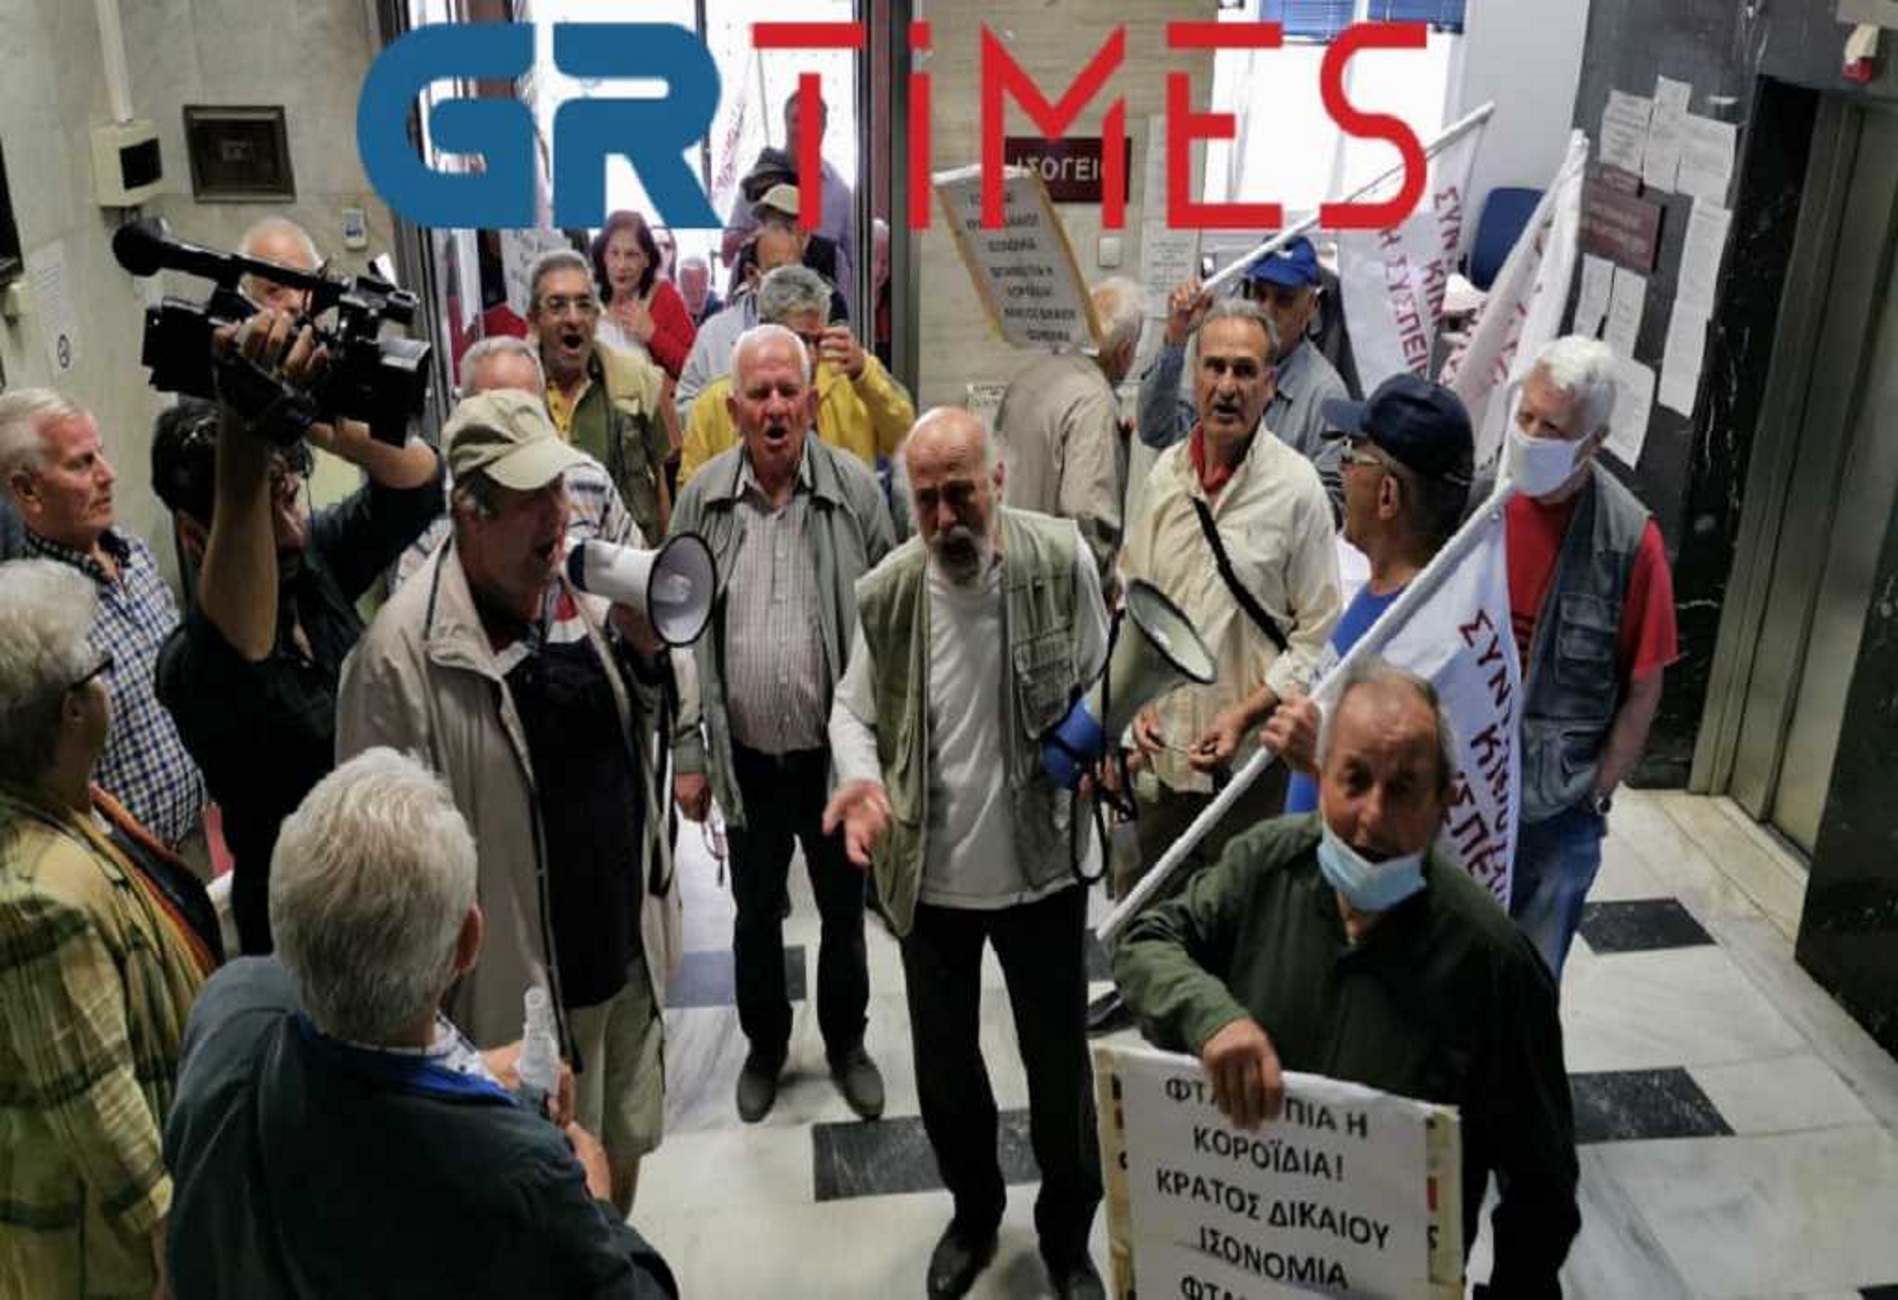 Θεσσαλονίκη: Συνταξιούχοι μπούκαραν στον ΕΦΚΑ! “Να σταματήσει η κοροϊδία με τα αναδρομικά μας” (Βίντεο)